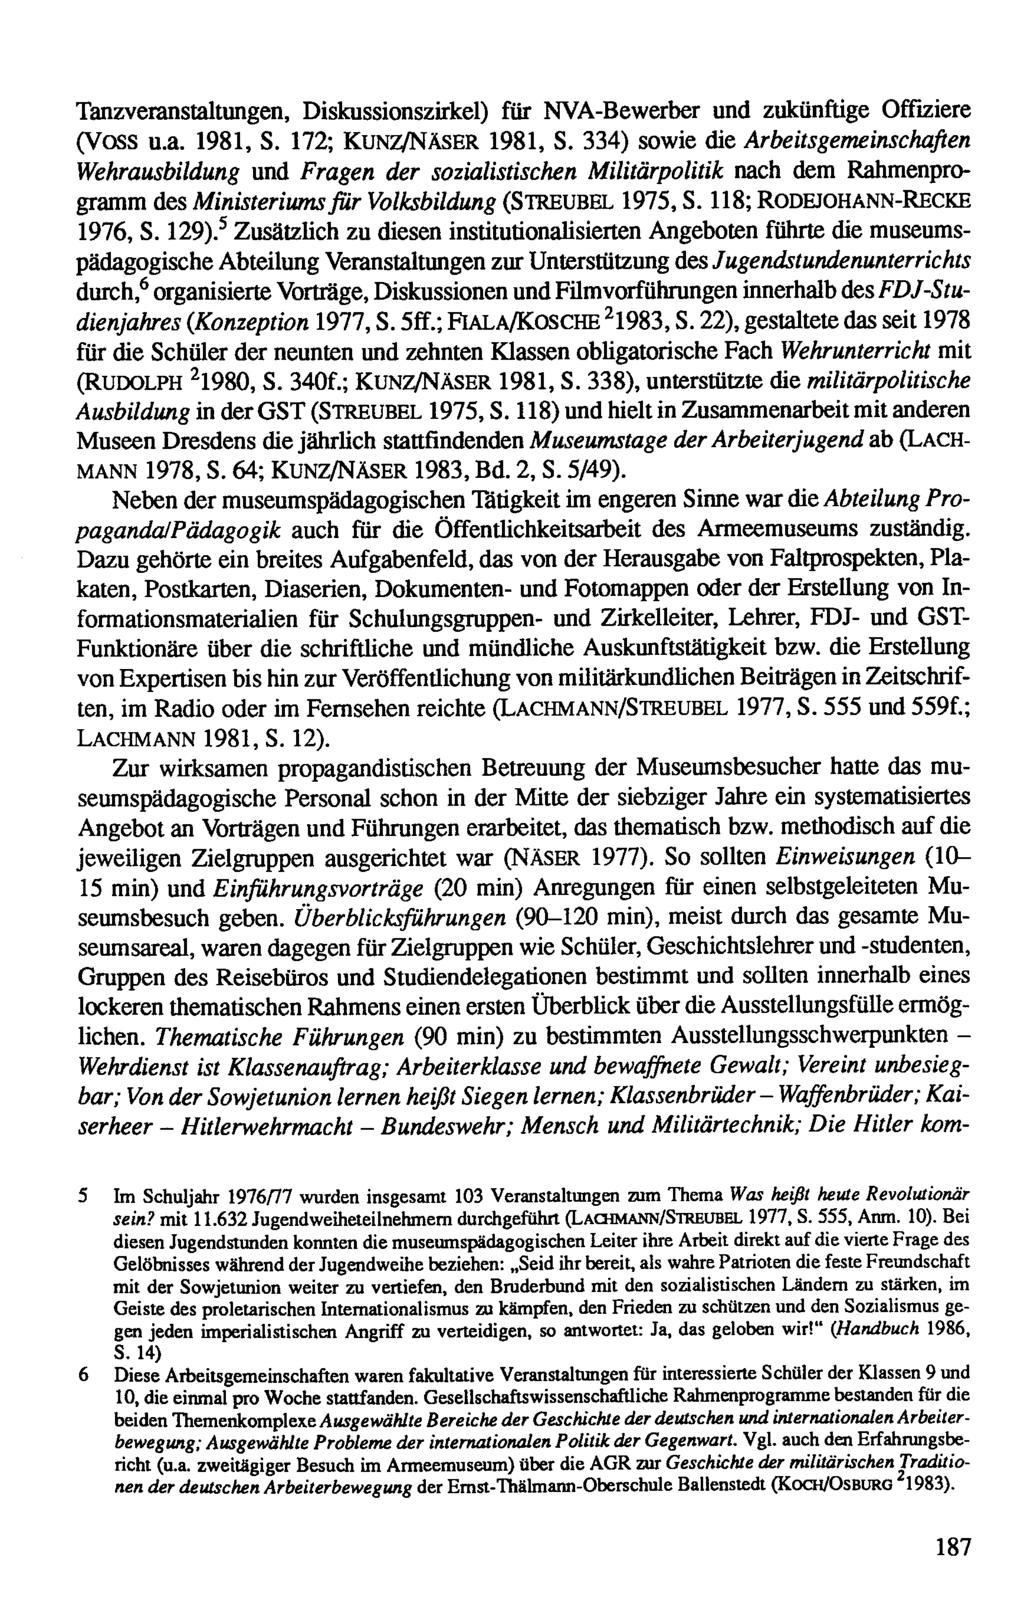 Hitlerwehrmacht Bundeswehr; Tanzveranstaltungen, Diskussionszirkel) für NVABewerber und zukünftige Offiziere (Voss u.a. 1981, S. 172; Kunz/Näser 1981, S.